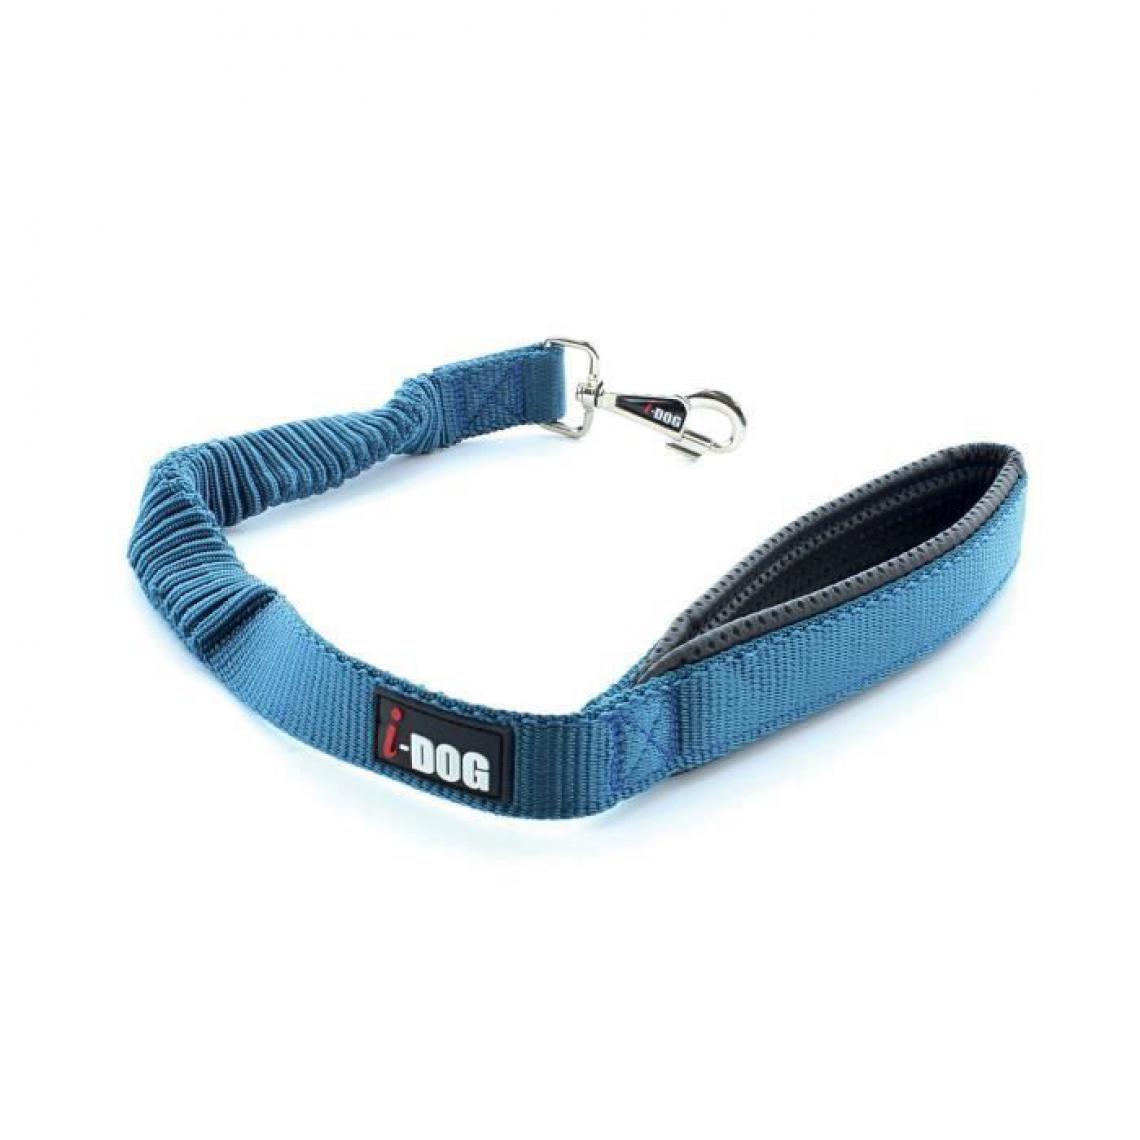 I-Dog - I DOG Laisse Confort - L 60 cm - Bleu et gris - Pour chien - Laisse pour chien